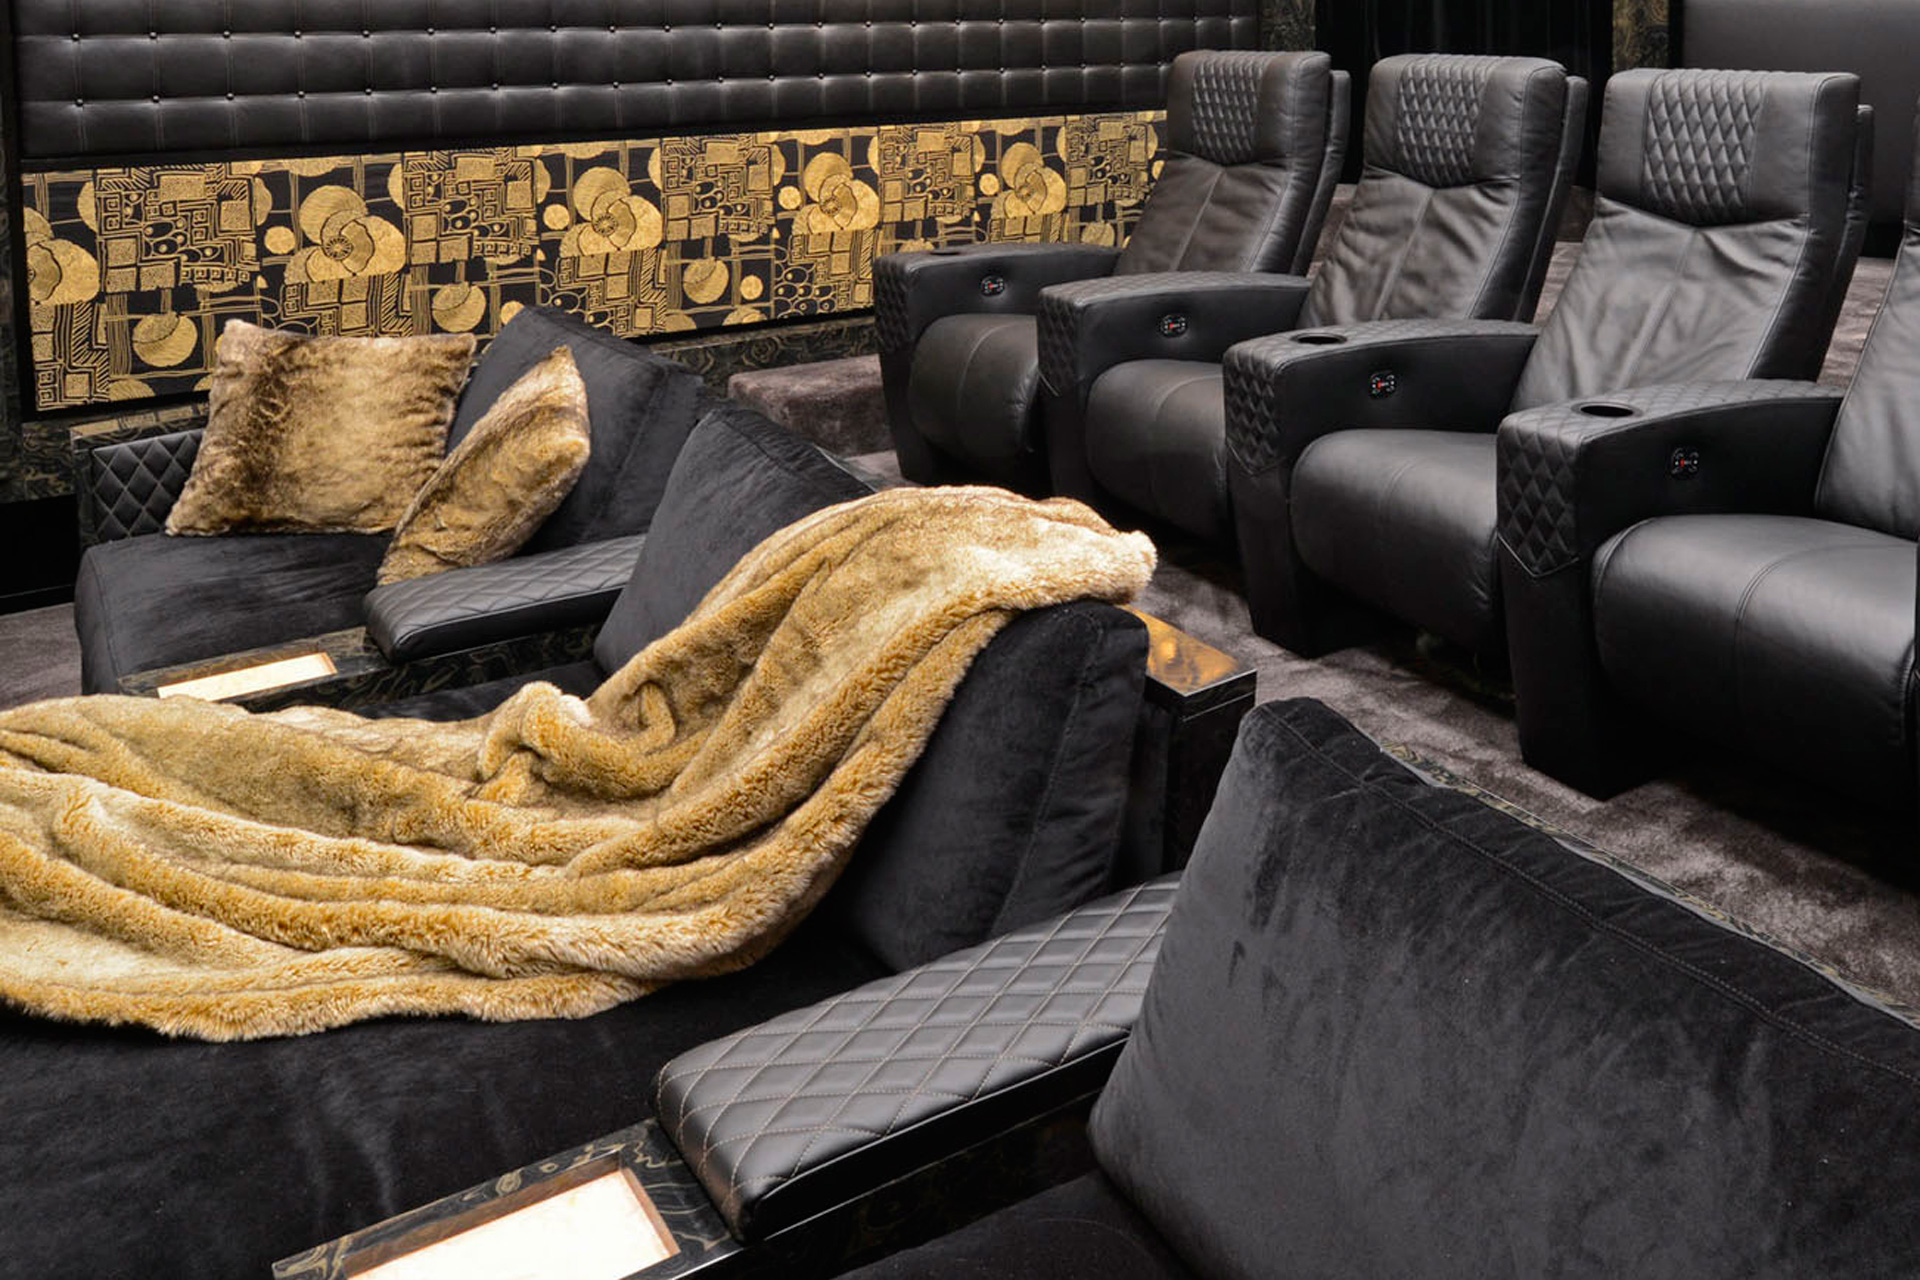 CINEAK – Antwerp & Hollywood  Luxery seating • Private cinema - Original Media